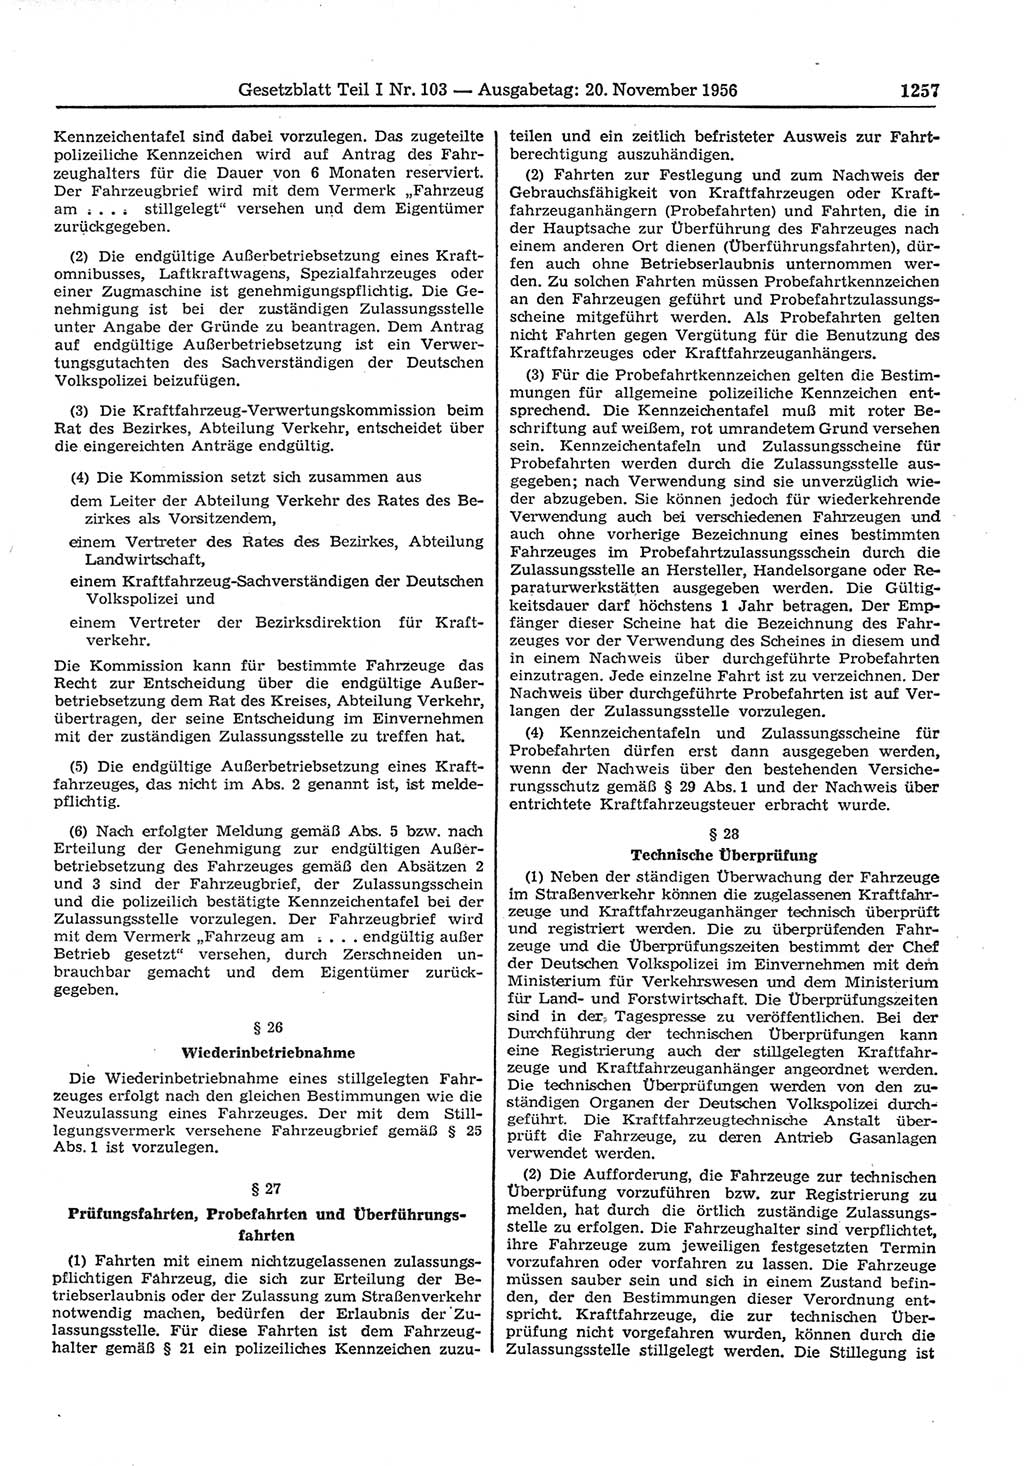 Gesetzblatt (GBl.) der Deutschen Demokratischen Republik (DDR) Teil Ⅰ 1956, Seite 1257 (GBl. DDR Ⅰ 1956, S. 1257)